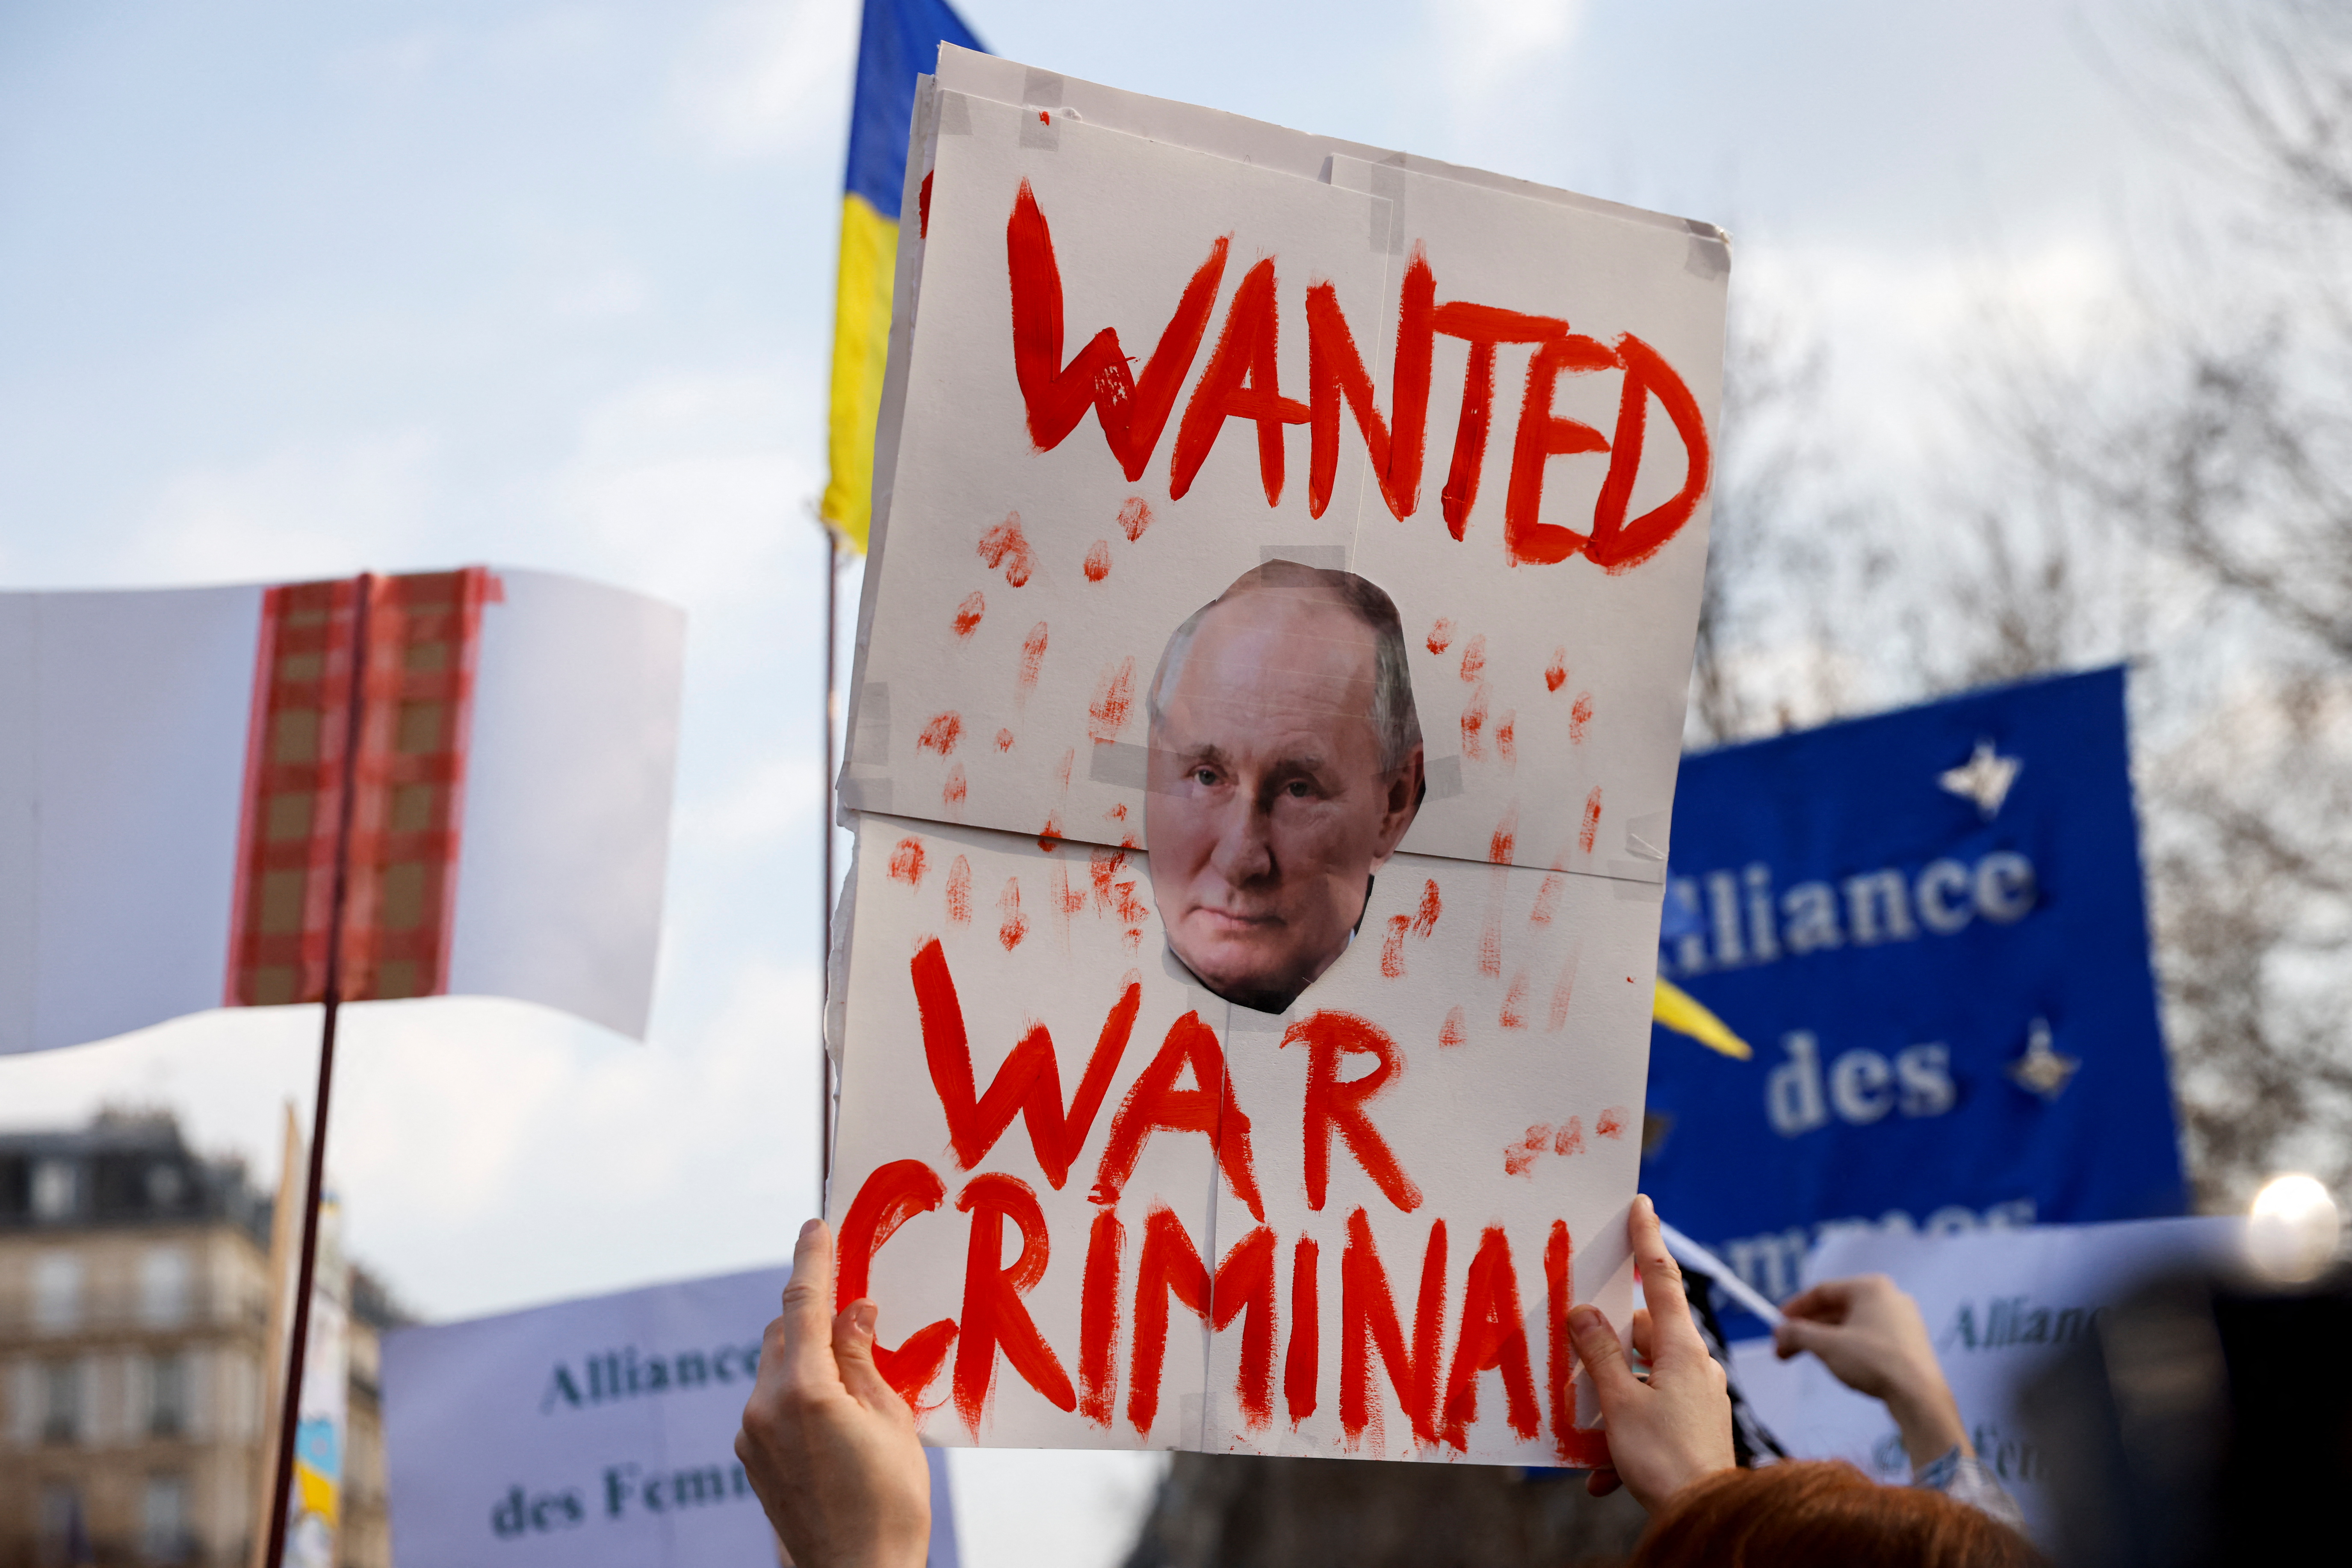 Carteles en contra de la invasión rusa a Ucrania y que señalan al jefe de estado ruso Vladimir Putin como un criminal de guerra pueden verse durante una protesta en las calles de París este 5 de marzo (Reuters)